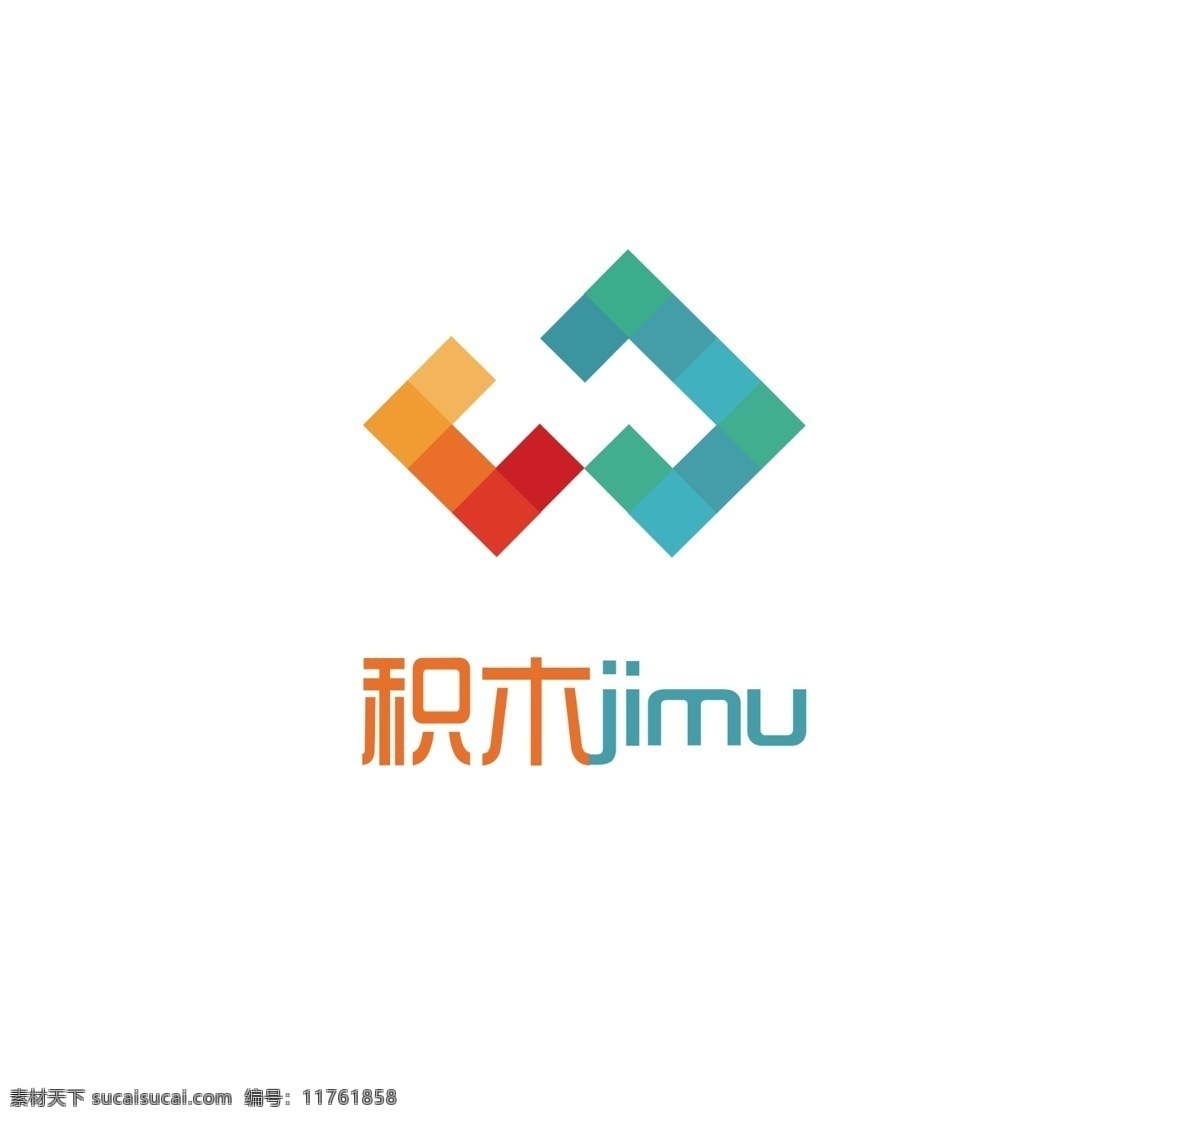 积木logo 大气 简约 时尚 潮流 字体设计